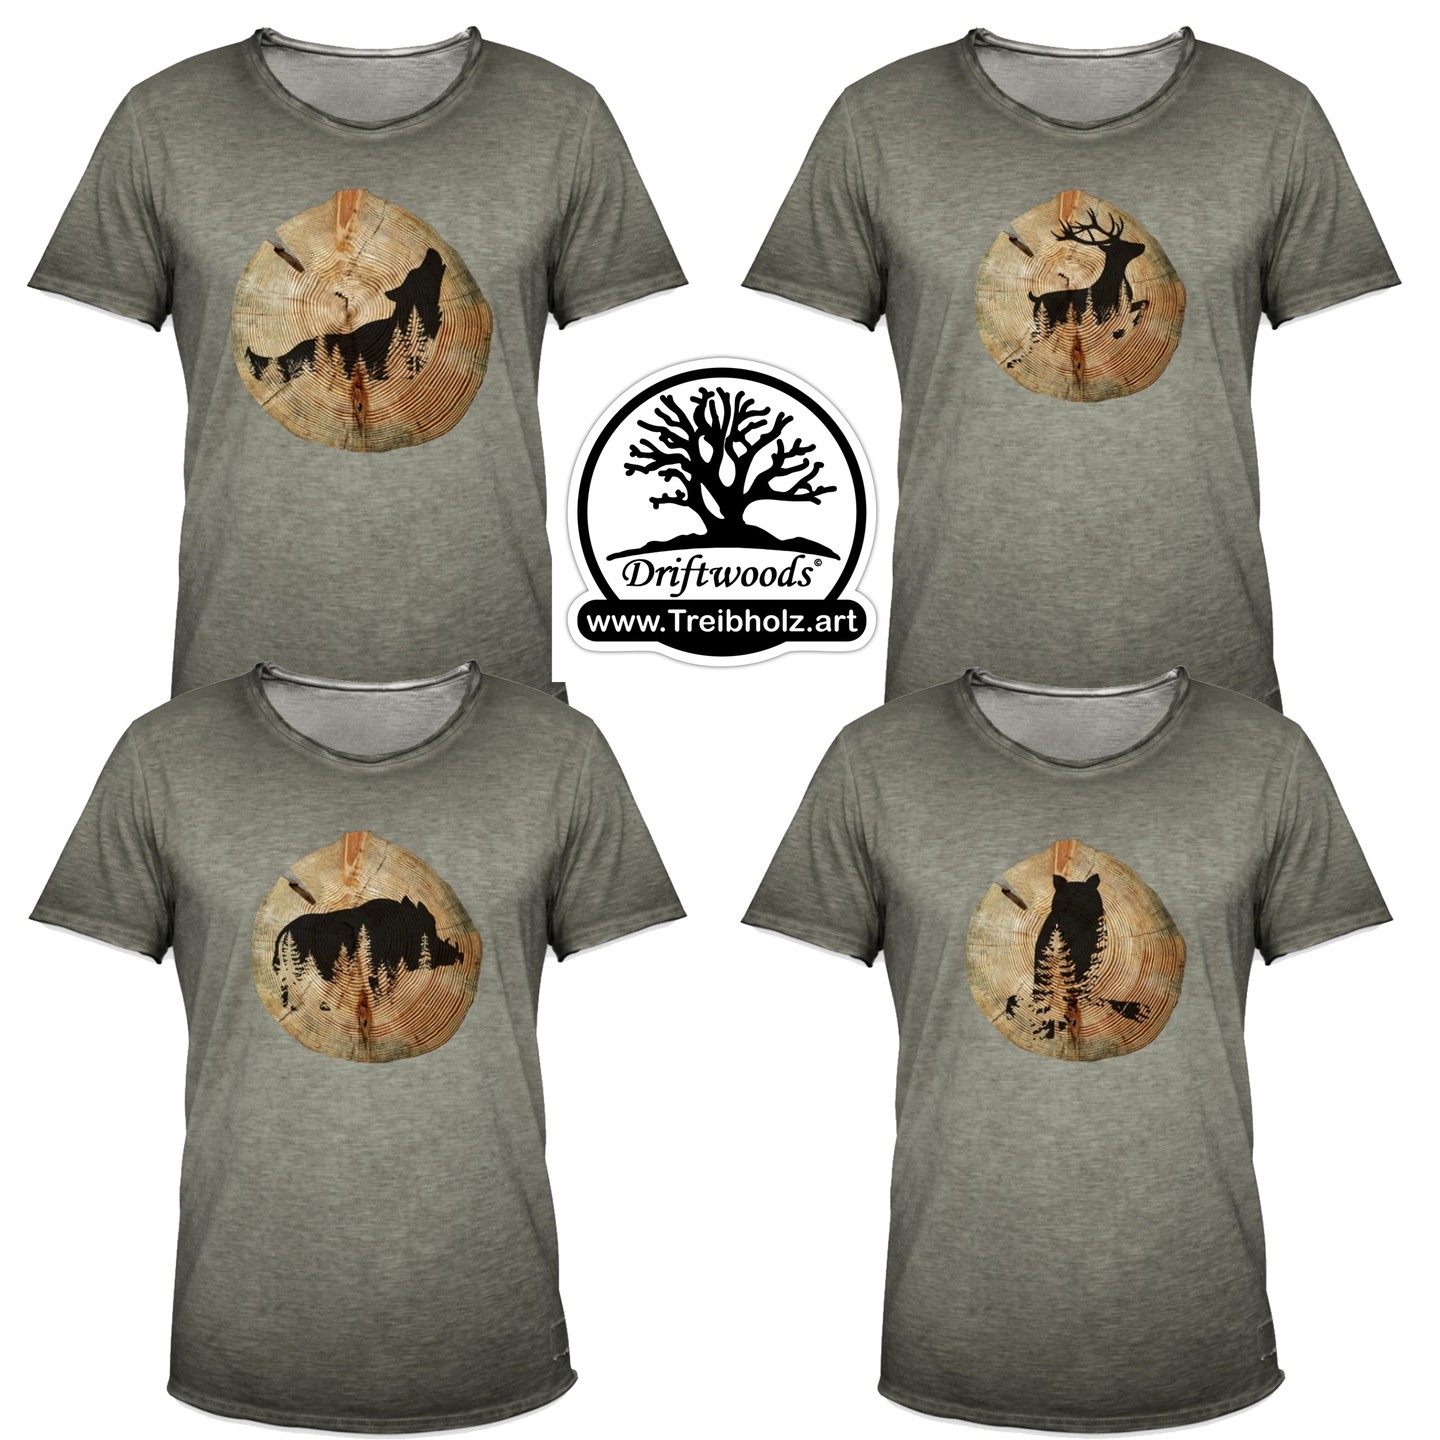 KUCK MAL . . .
.
Coole Hoodies & T-Shirts
.
Baumscheibe mit verschiedenen Motiven
#hirsch
#eule
#wildschwein
#wolf
#heimatliebe
#schwarzwaldtussi
#eber
#wildschwein
#forest
#jäger
#hunting
#Schwarzwald
#heimat
#outdoorhunting 
#jagen